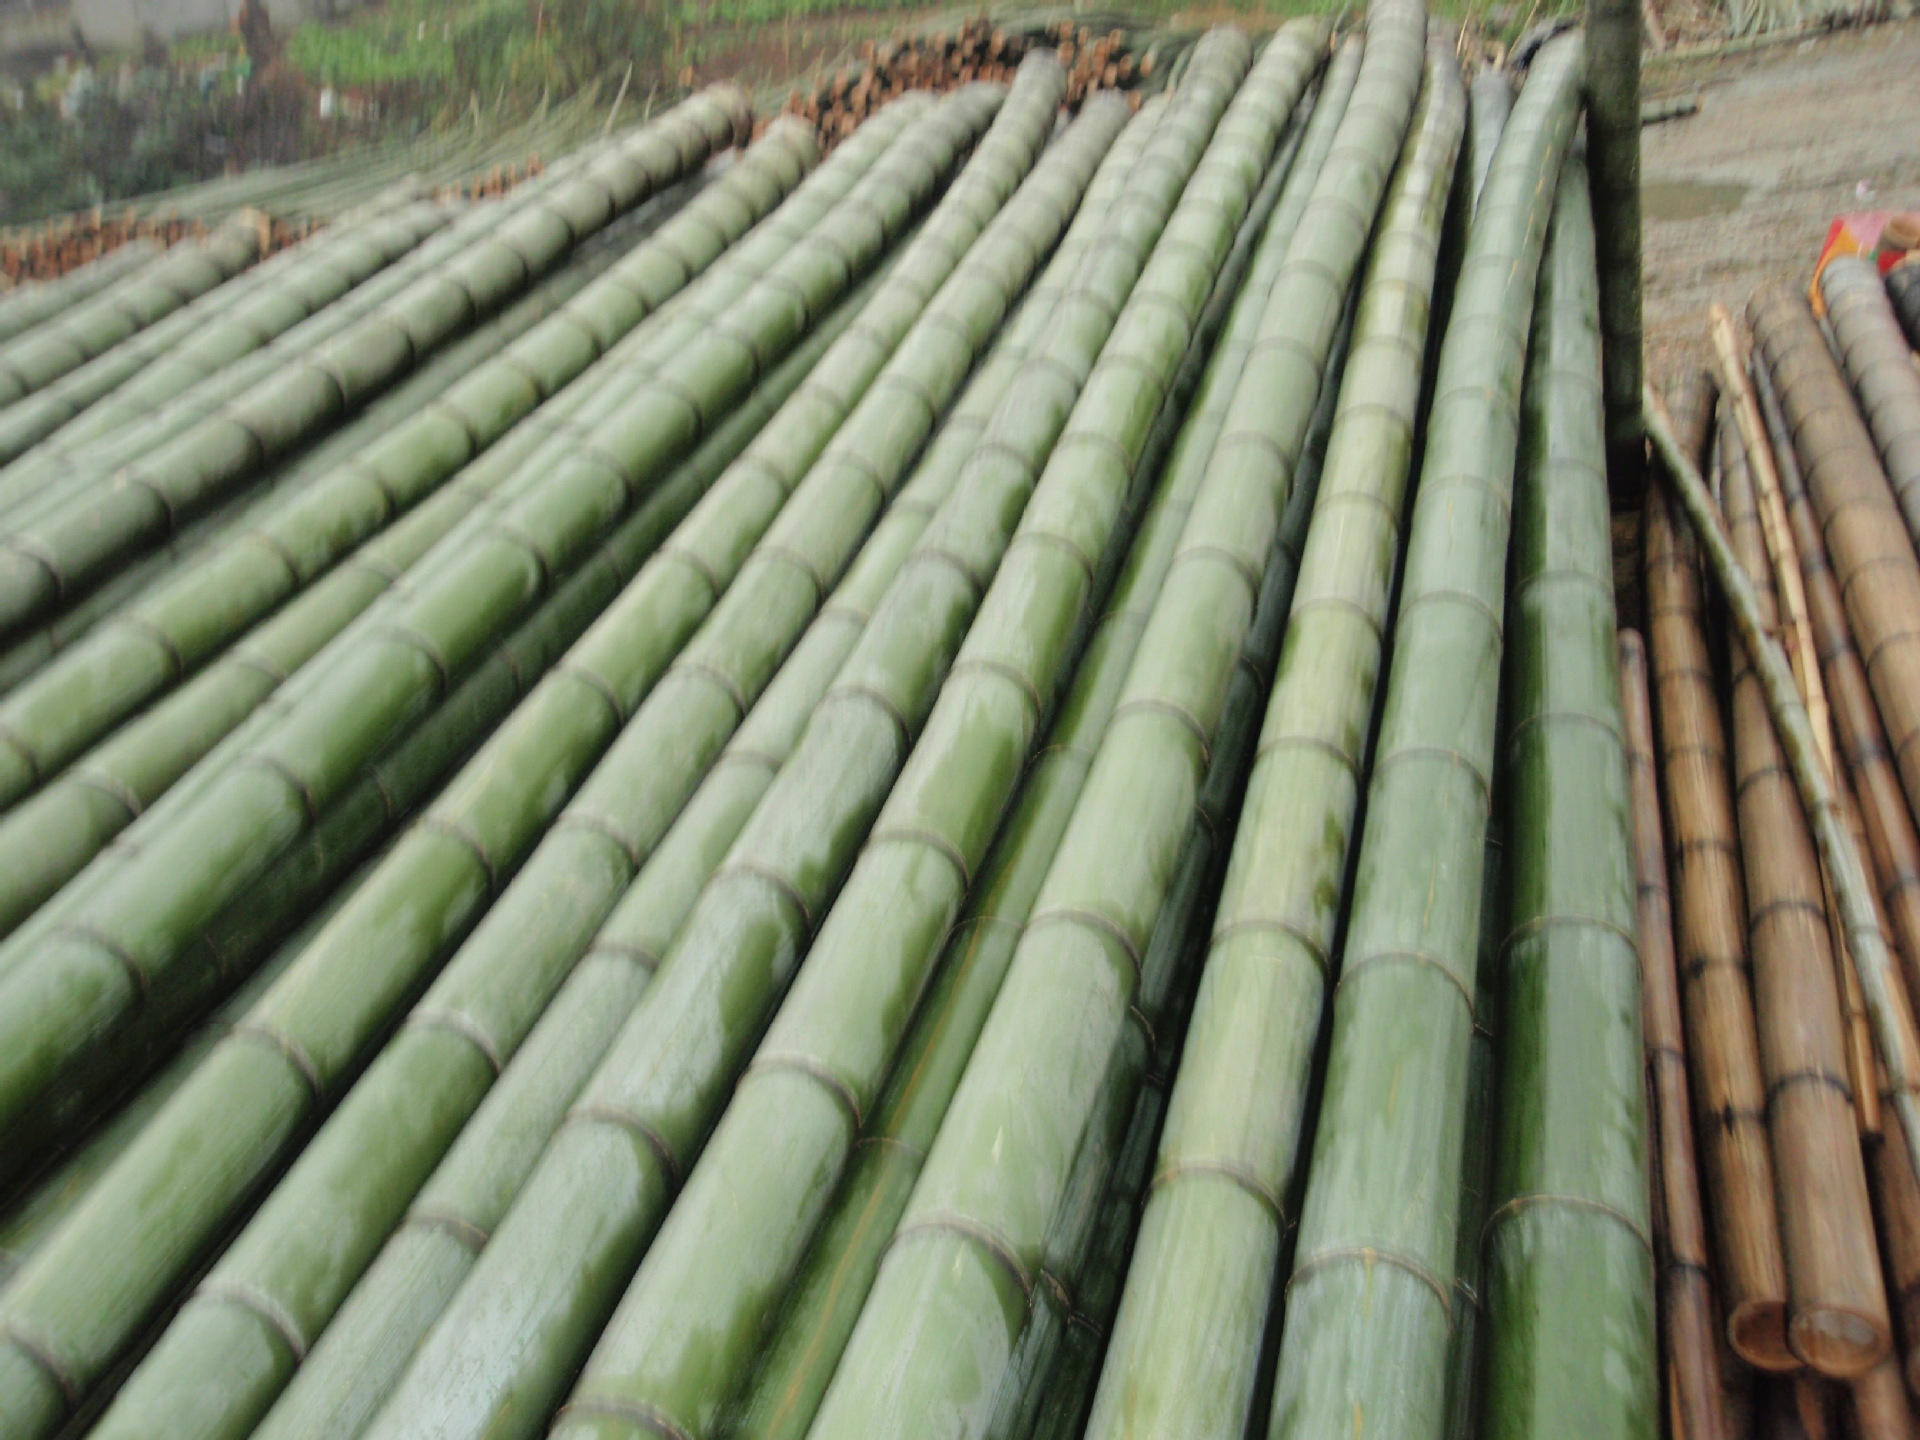 原材料   长期供应绿色无污染的毛竹,竹片等产品